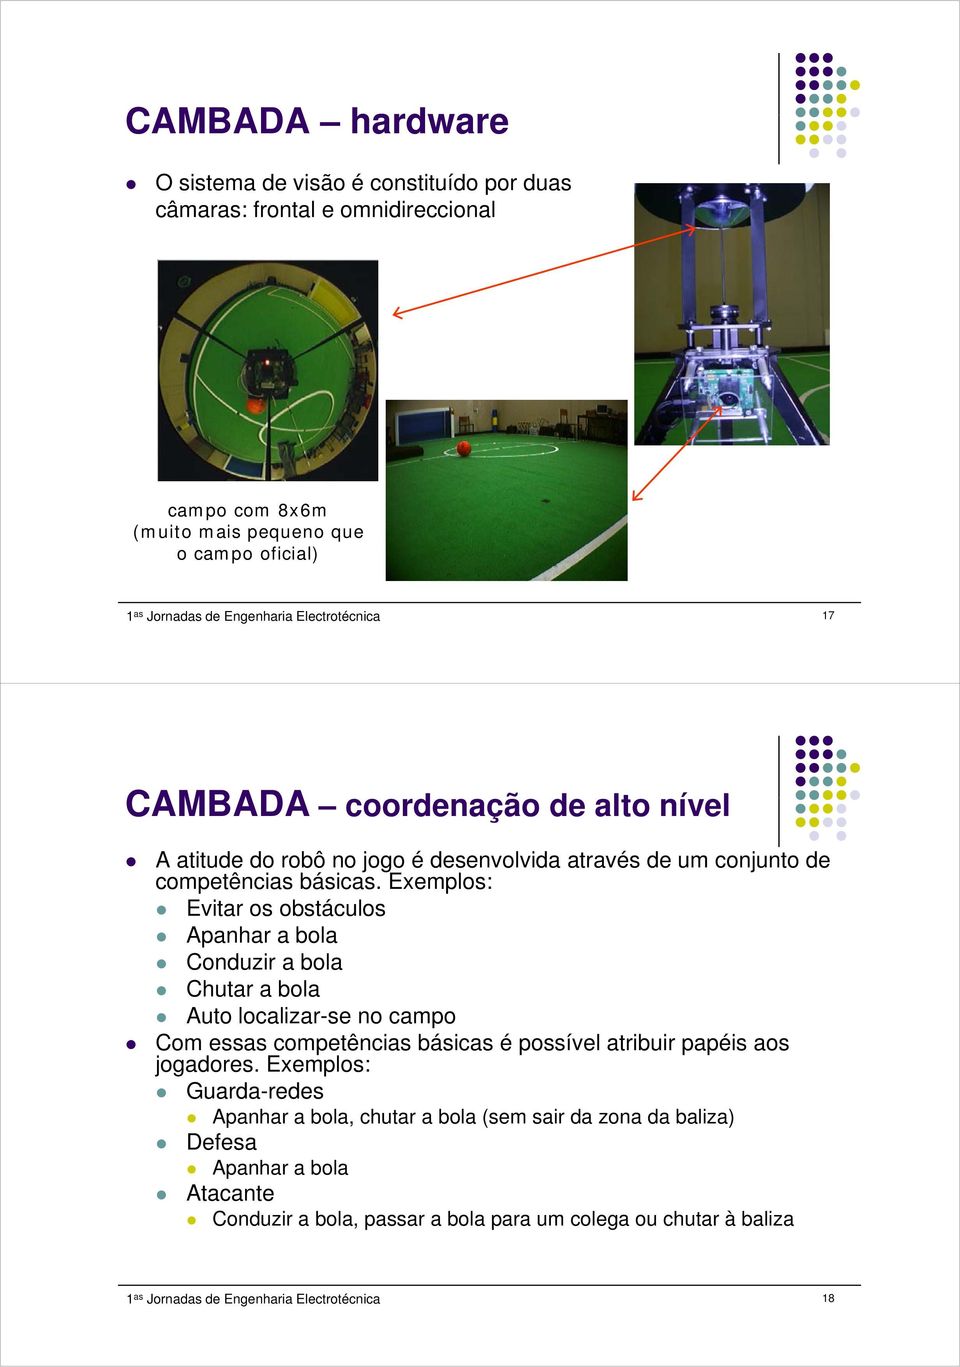 Exemplos: Evitar os obstáculos Apanhar a bola Conduzir a bola Chutar a bola Auto localizar-se no campo Com essas competências básicas é possível atribuir papéis aos jogadores.